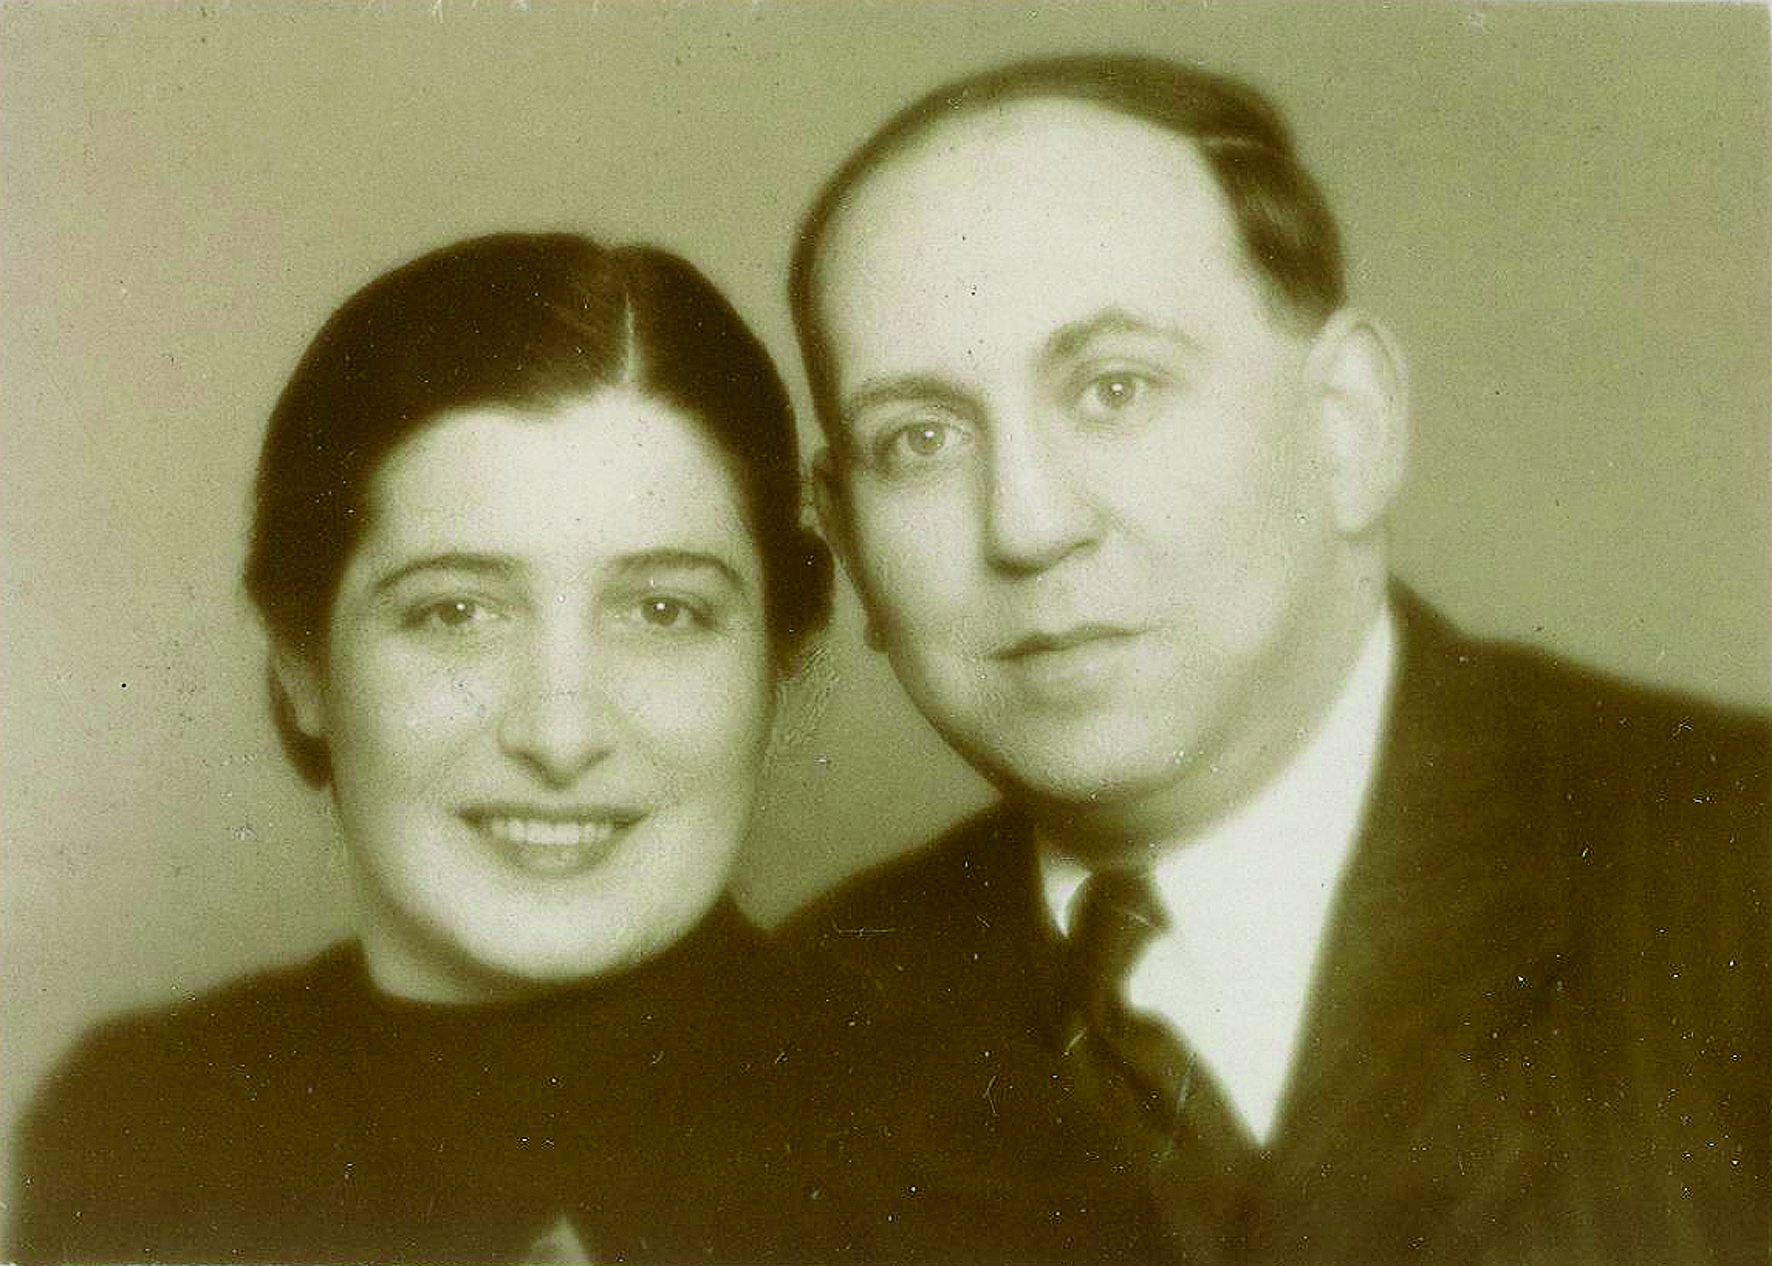 Pavels Eltern Elisabeth und Hans Hoffmann.